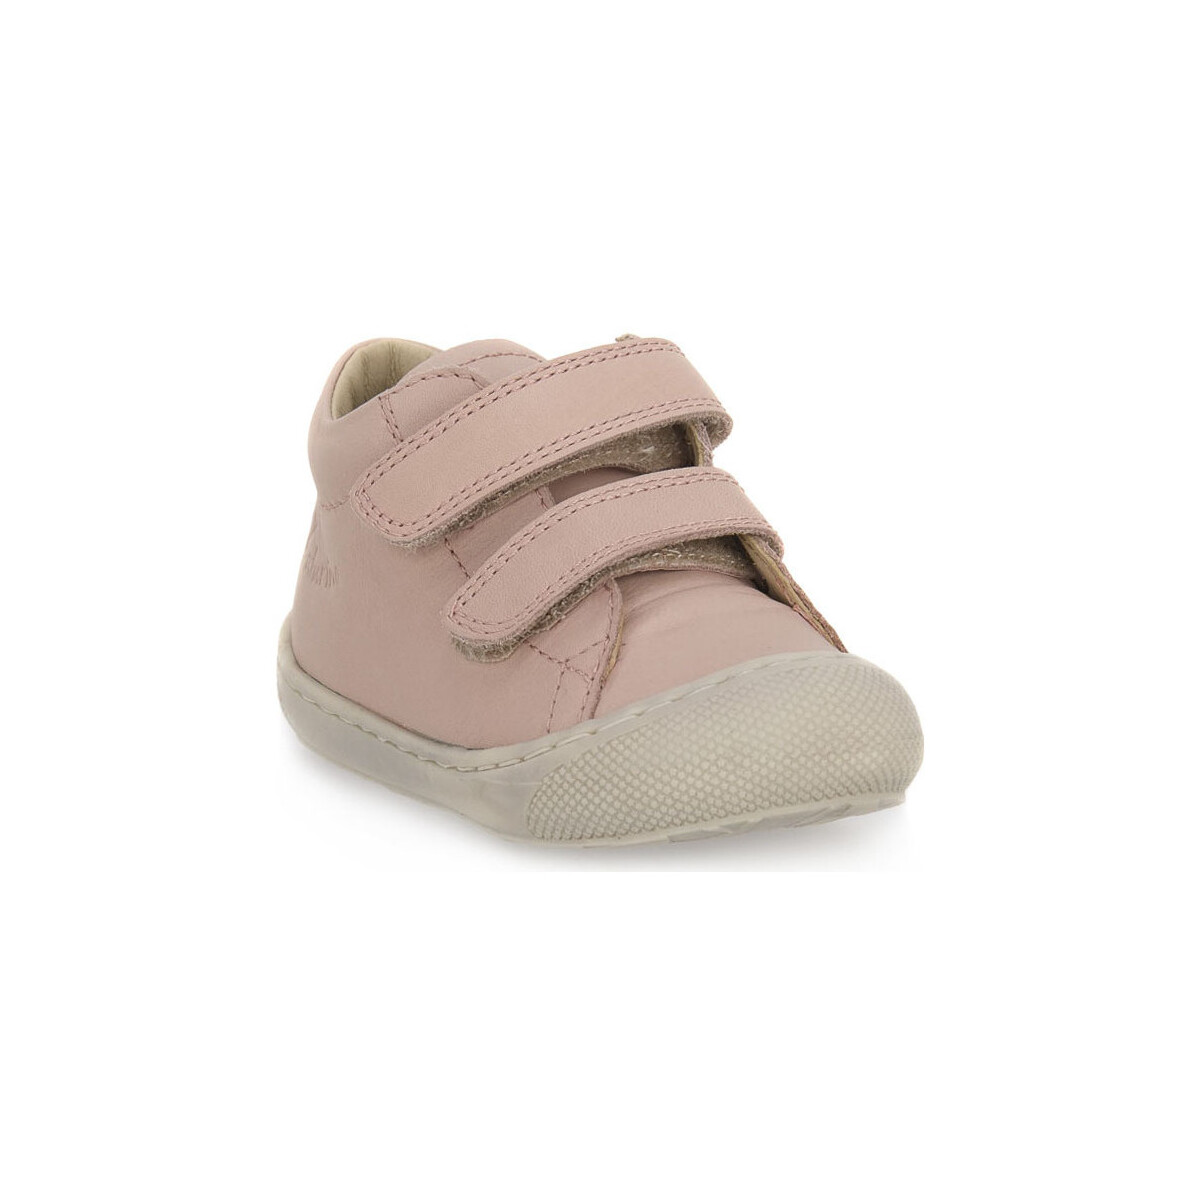 Scarpe Bambino Sneakers Naturino 0M04 COCOON VL Rosa